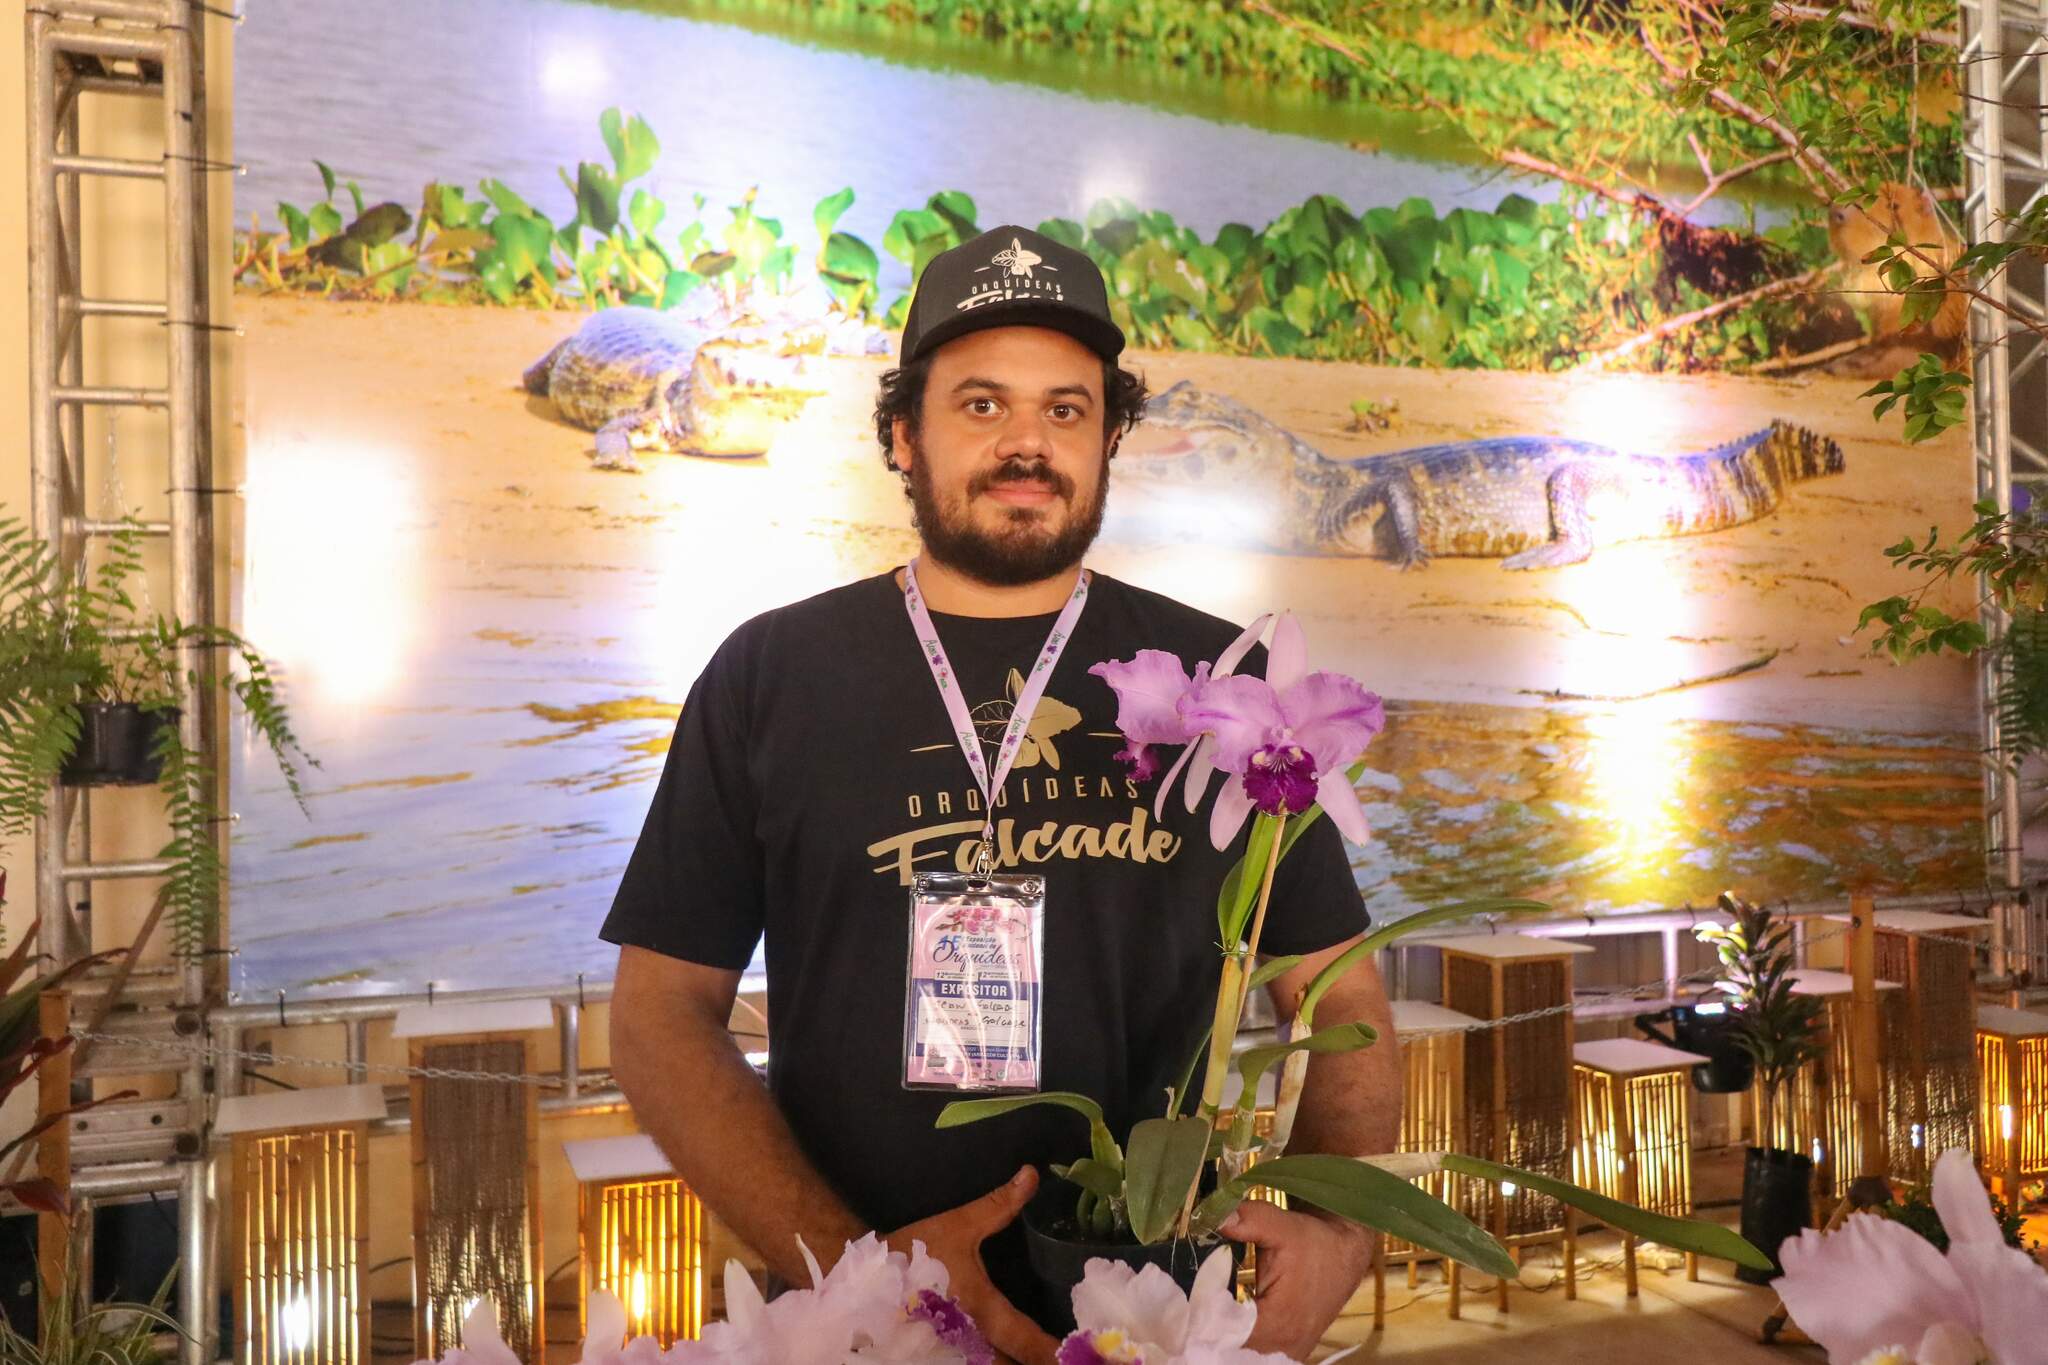 Com plantas de R$ 7 mil, exposição enlouquece quem ama orquídeas - Consumo  - Campo Grande News